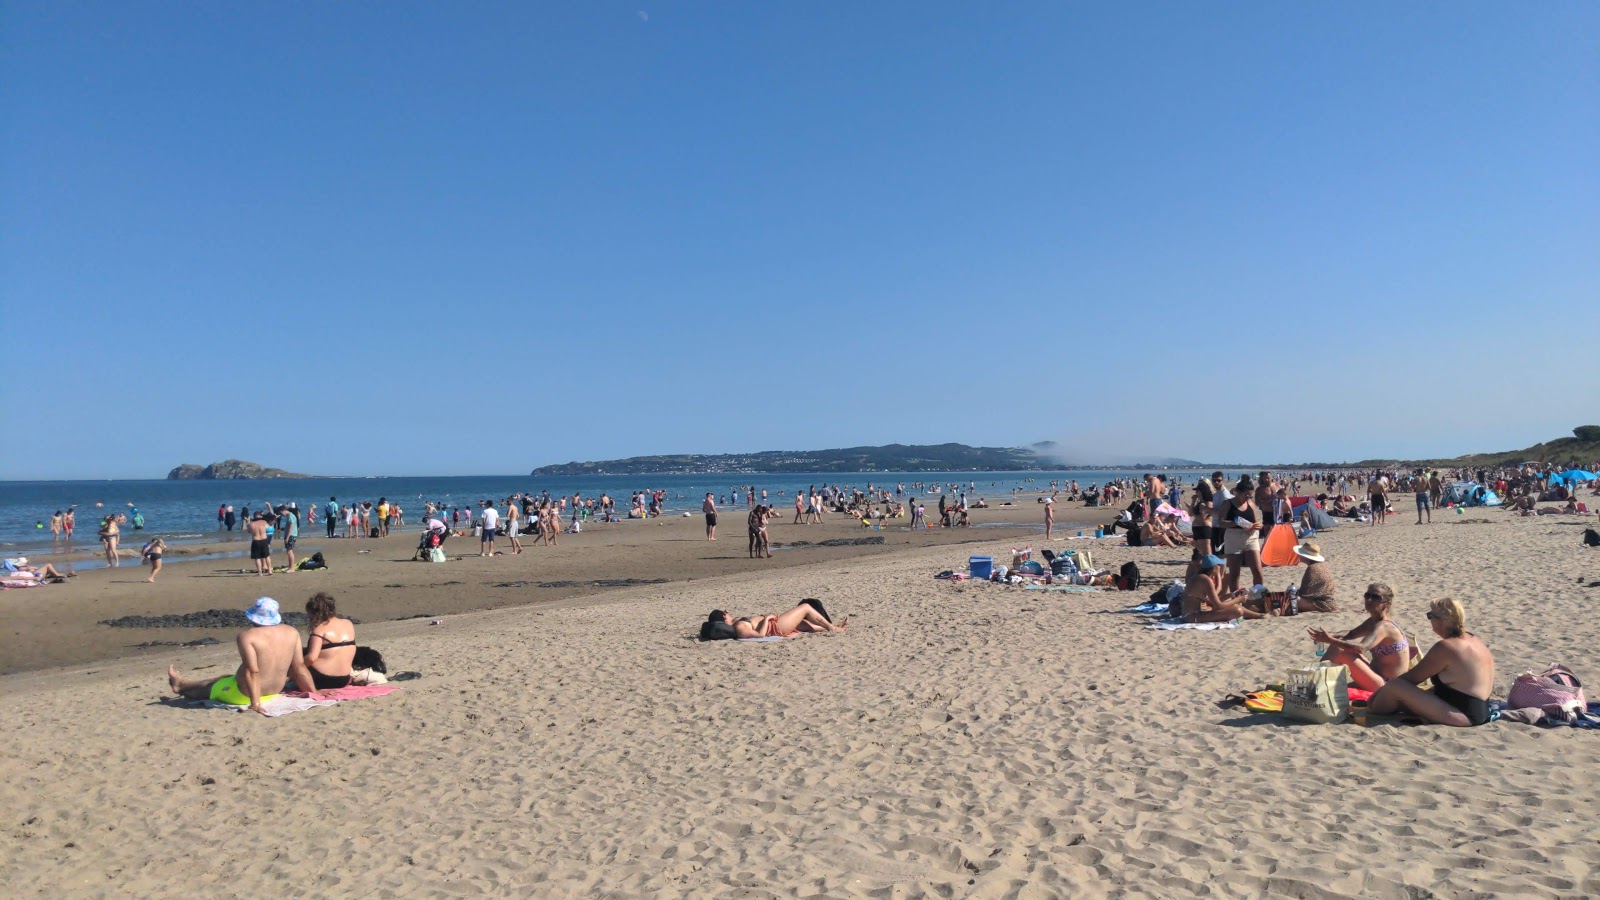 Zdjęcie Portmarnock Beach - popularne miejsce wśród znawców relaksu